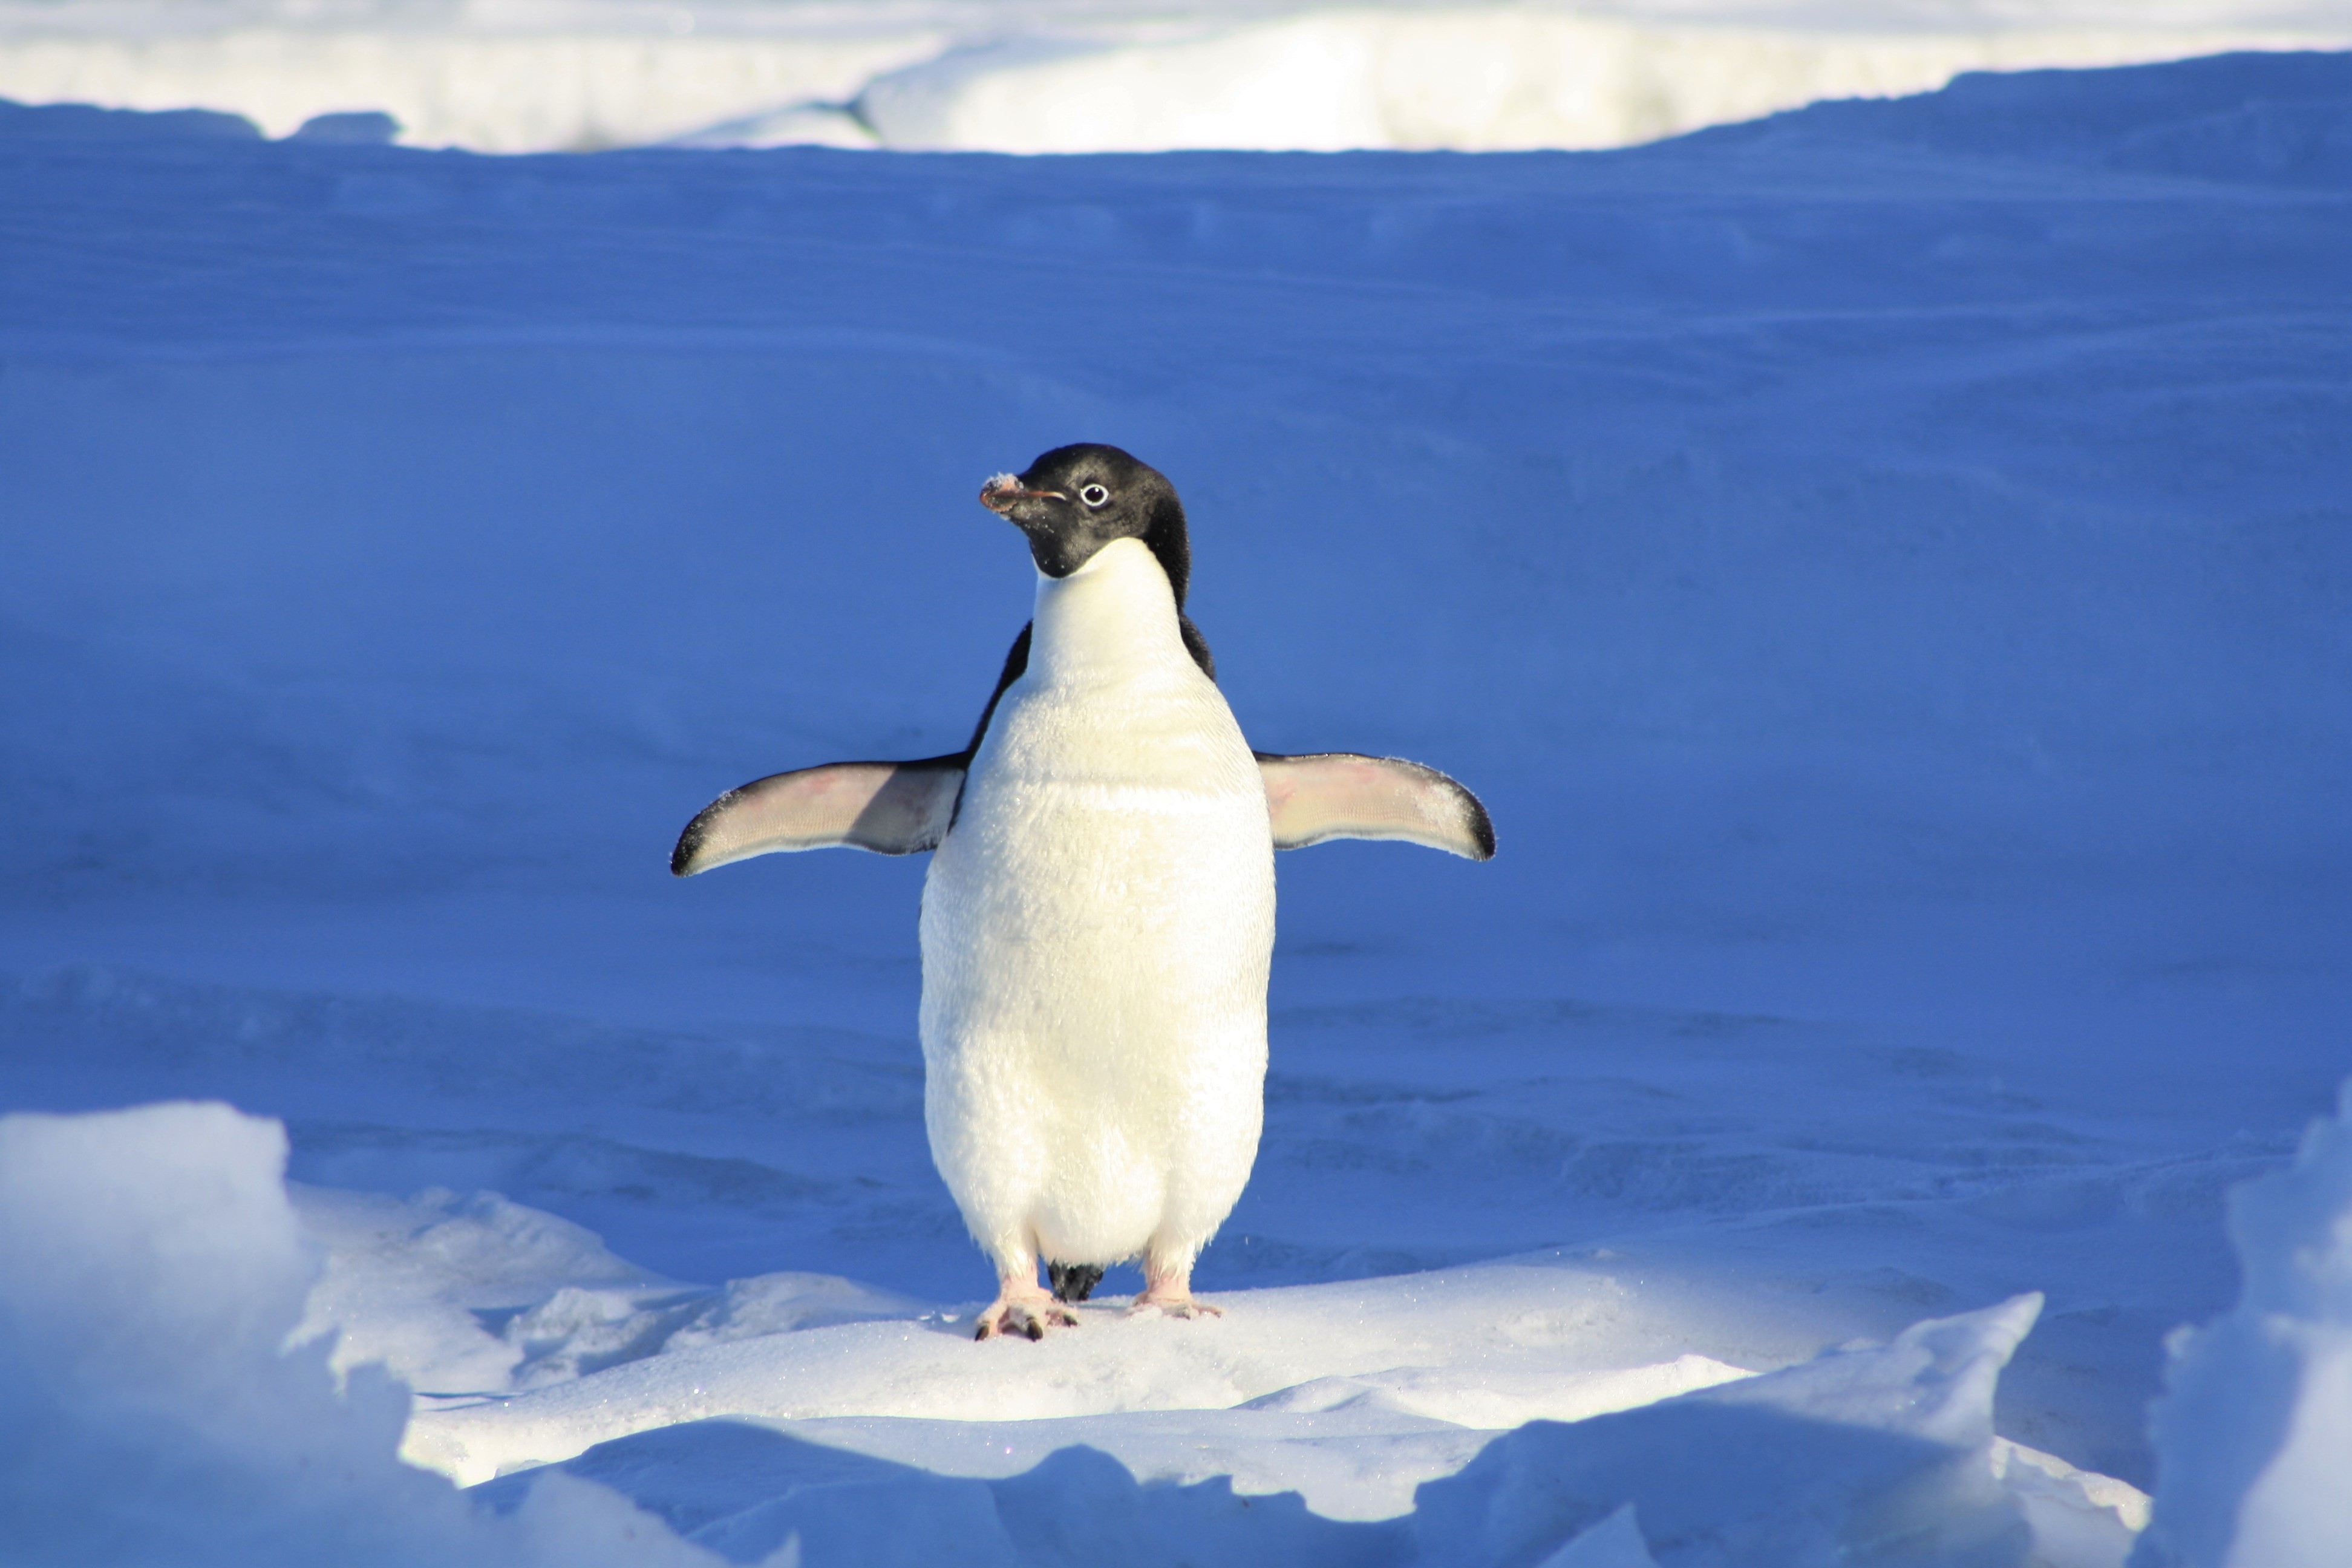 Tổng hợp các hình ảnh về chim cánh cụt dễ thương – Đặc điểm của loài chim cánh cụt - [Kích thước hình ảnh: 3888x2592 px]